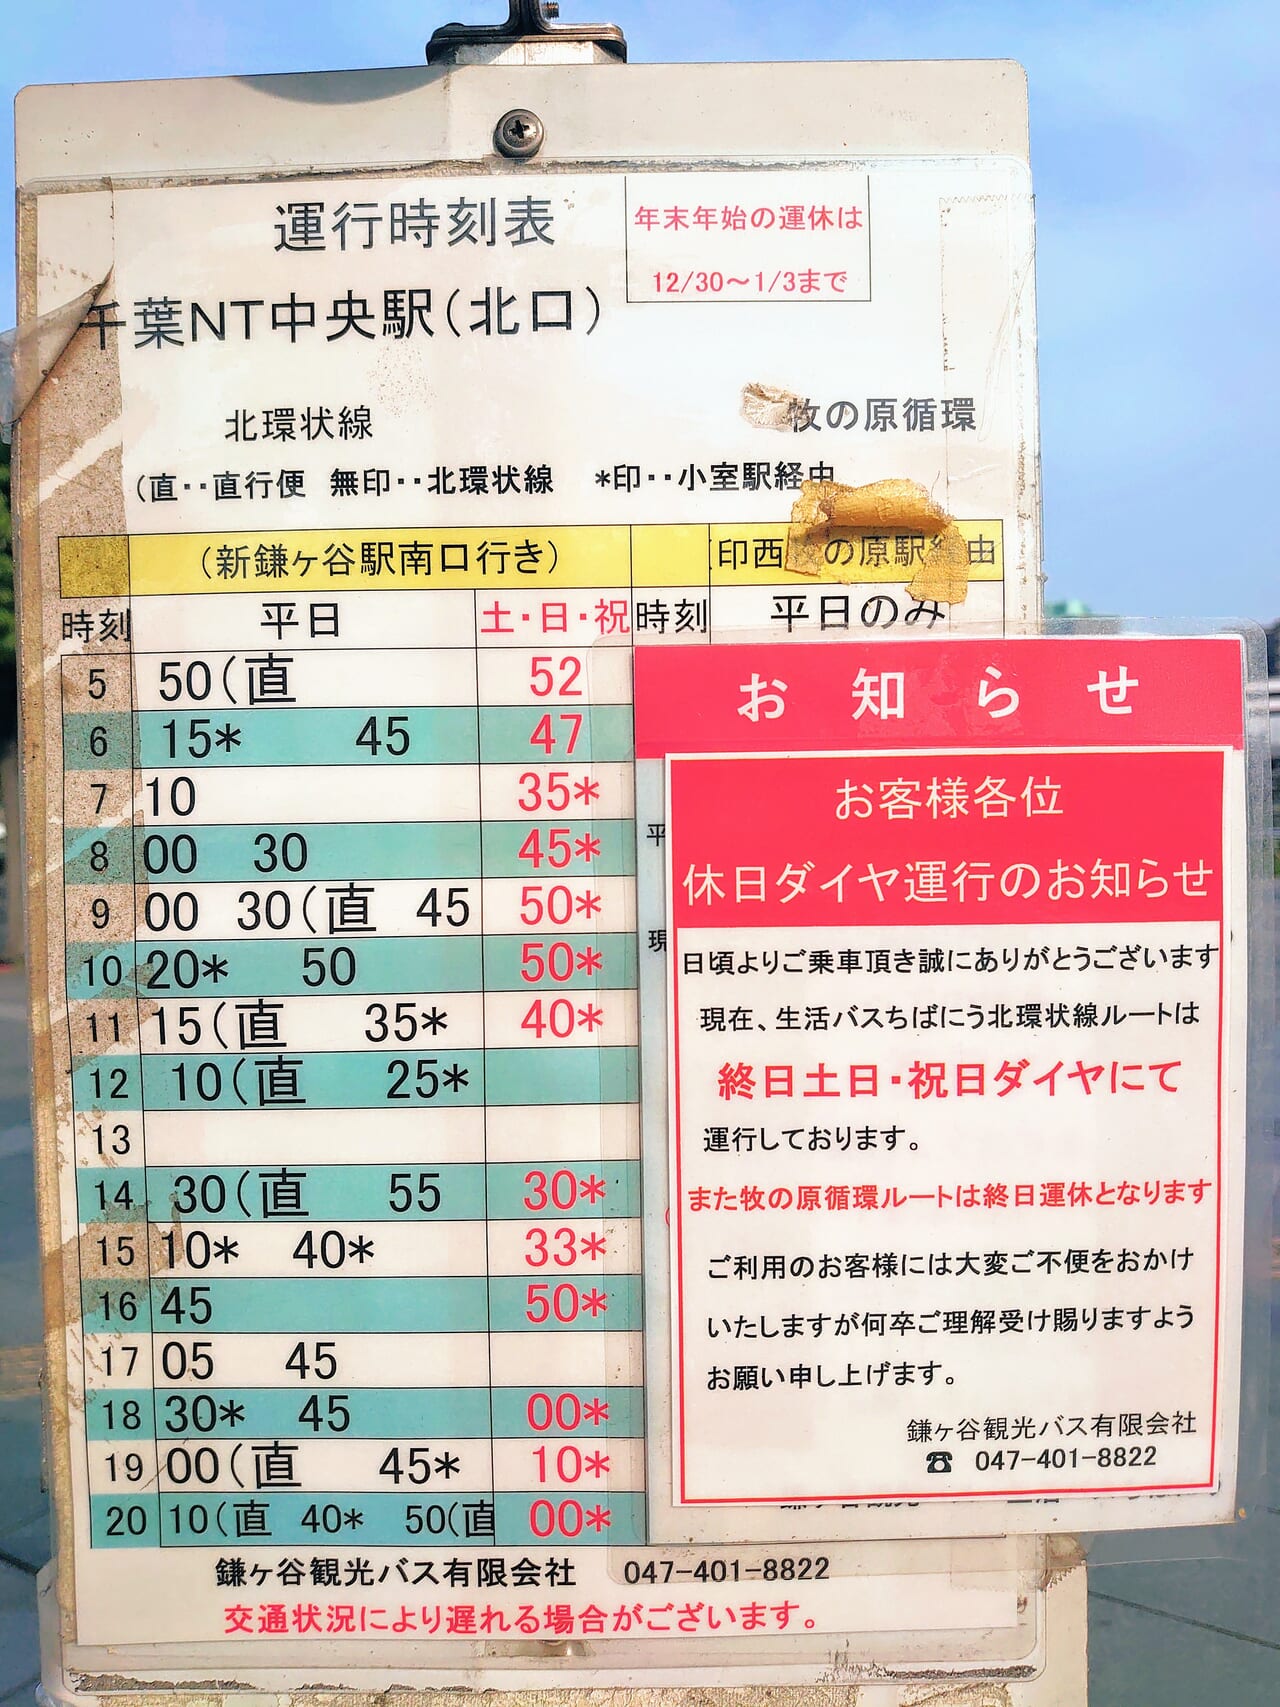 生活バス_千葉ニュータウン中央駅時刻現